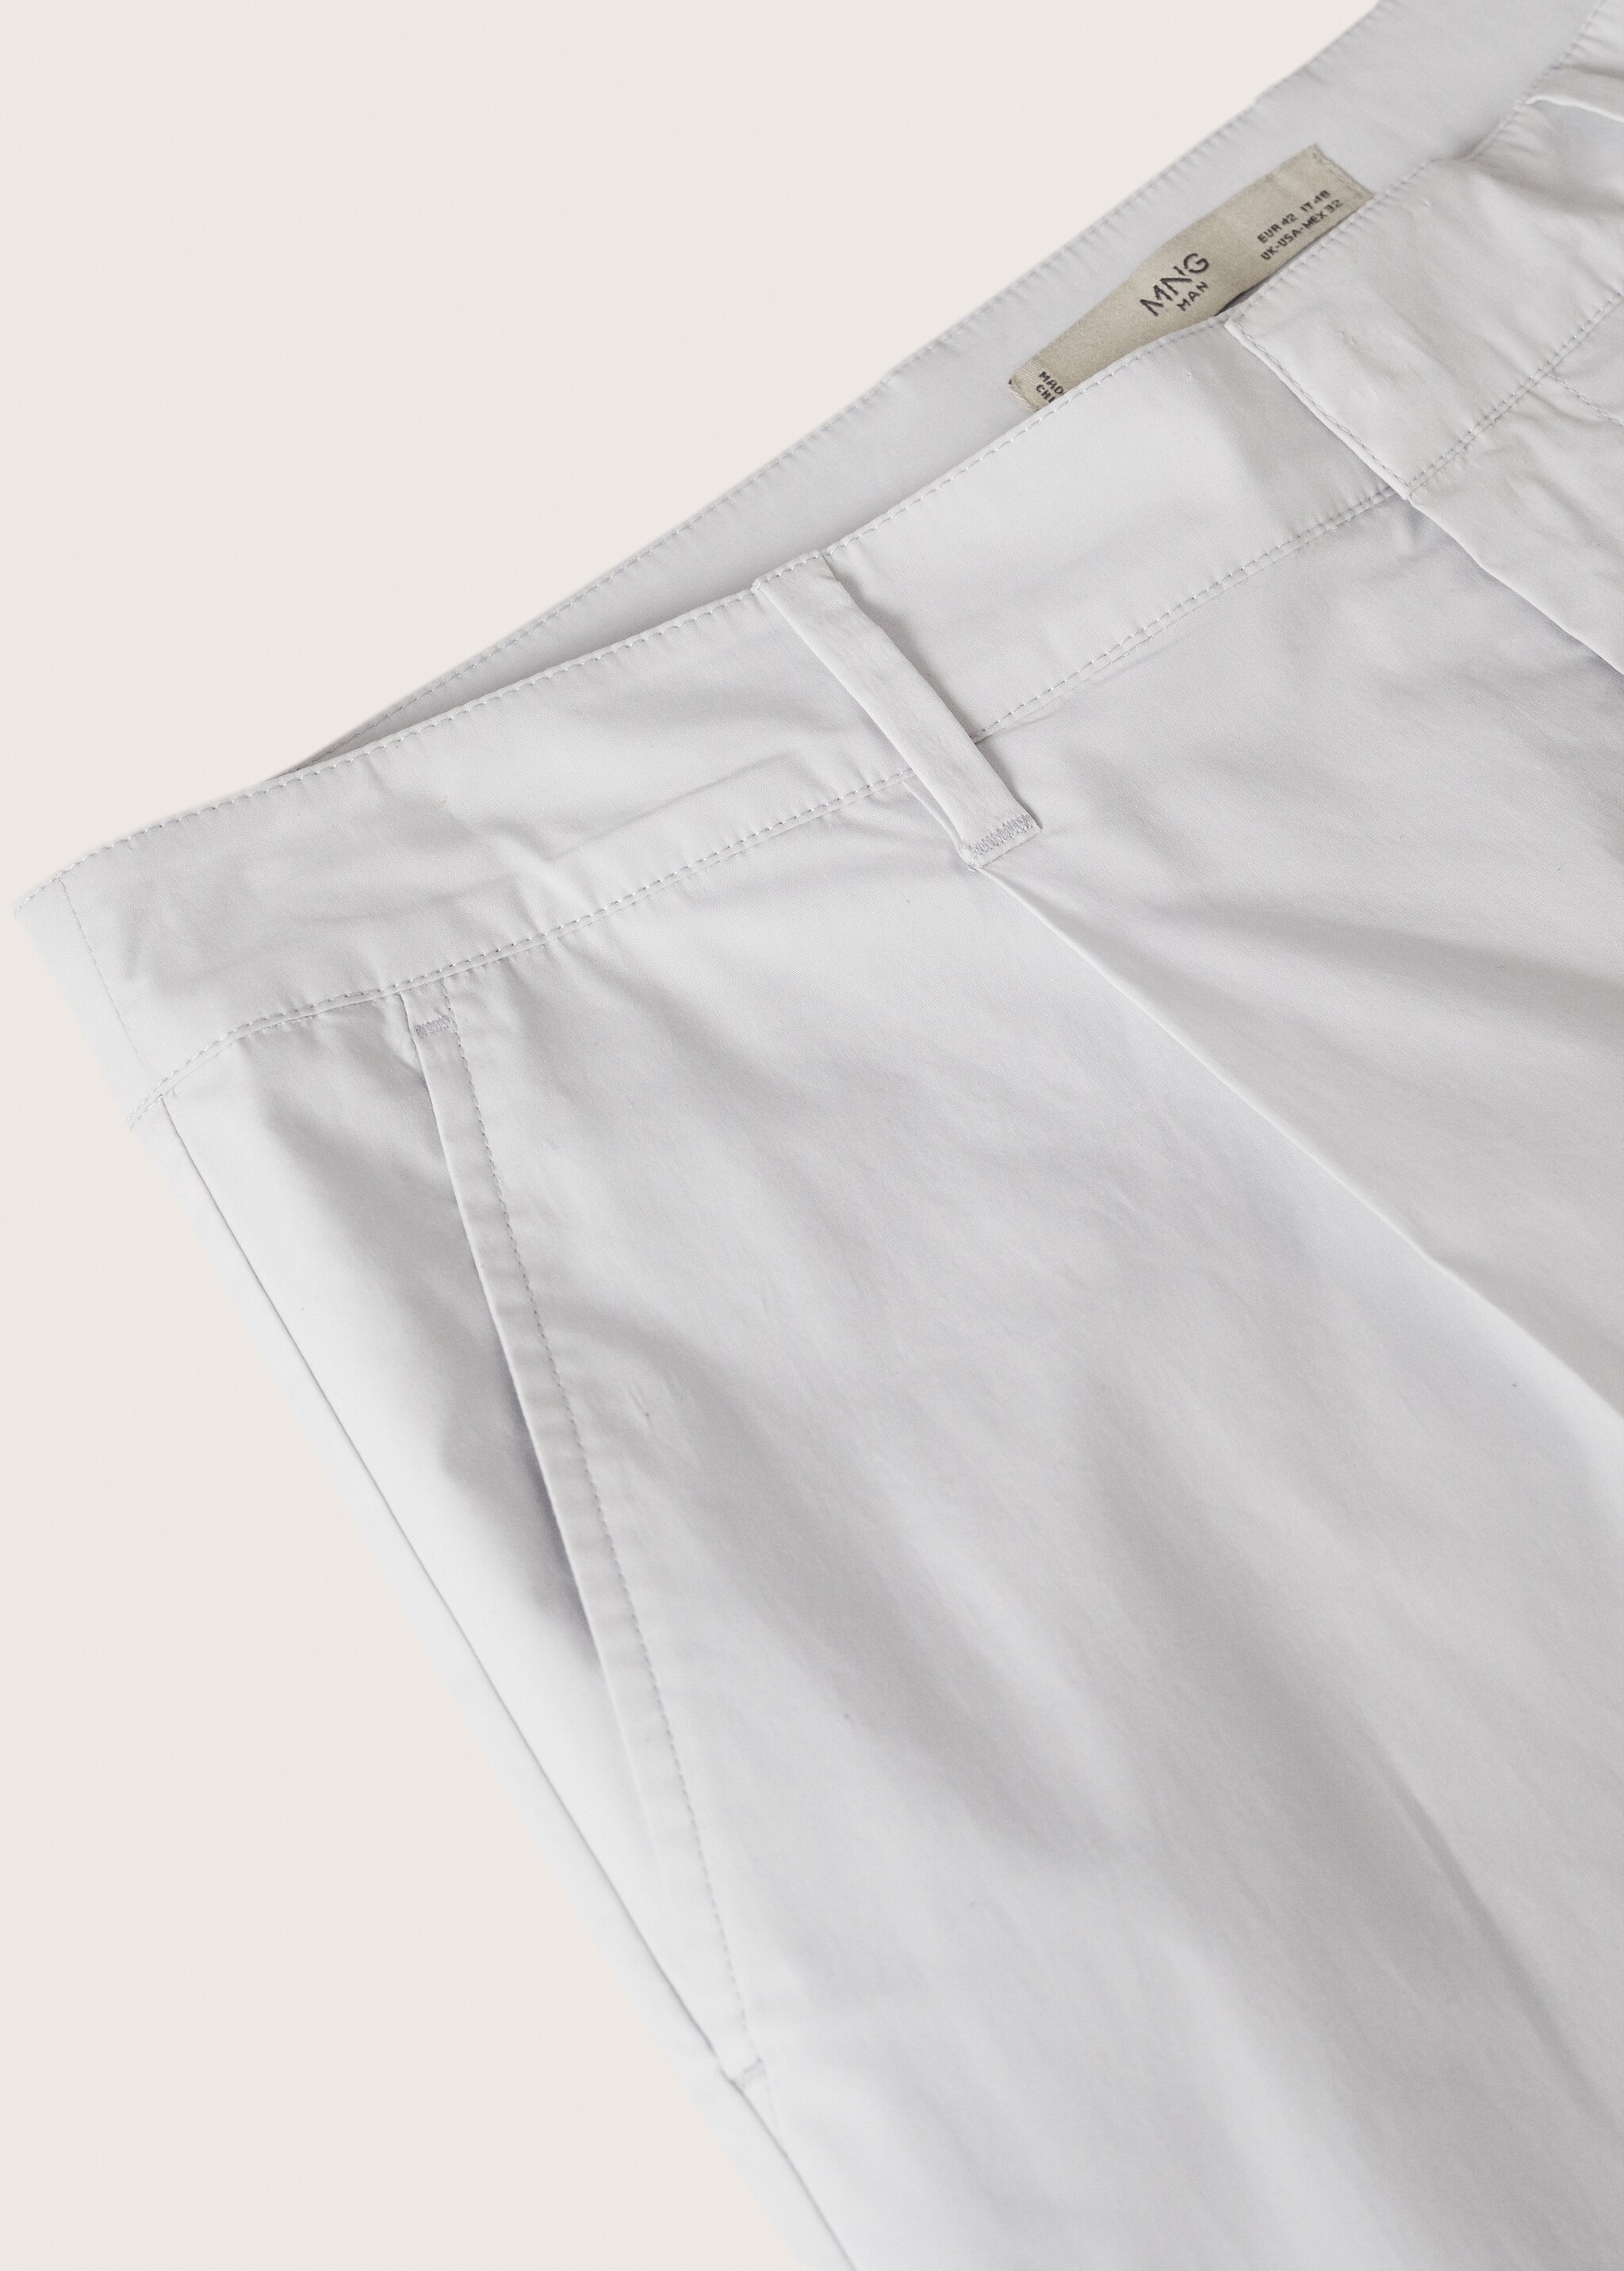 Bawełniane spodnie zakładki - Szczegóły artykułu 8